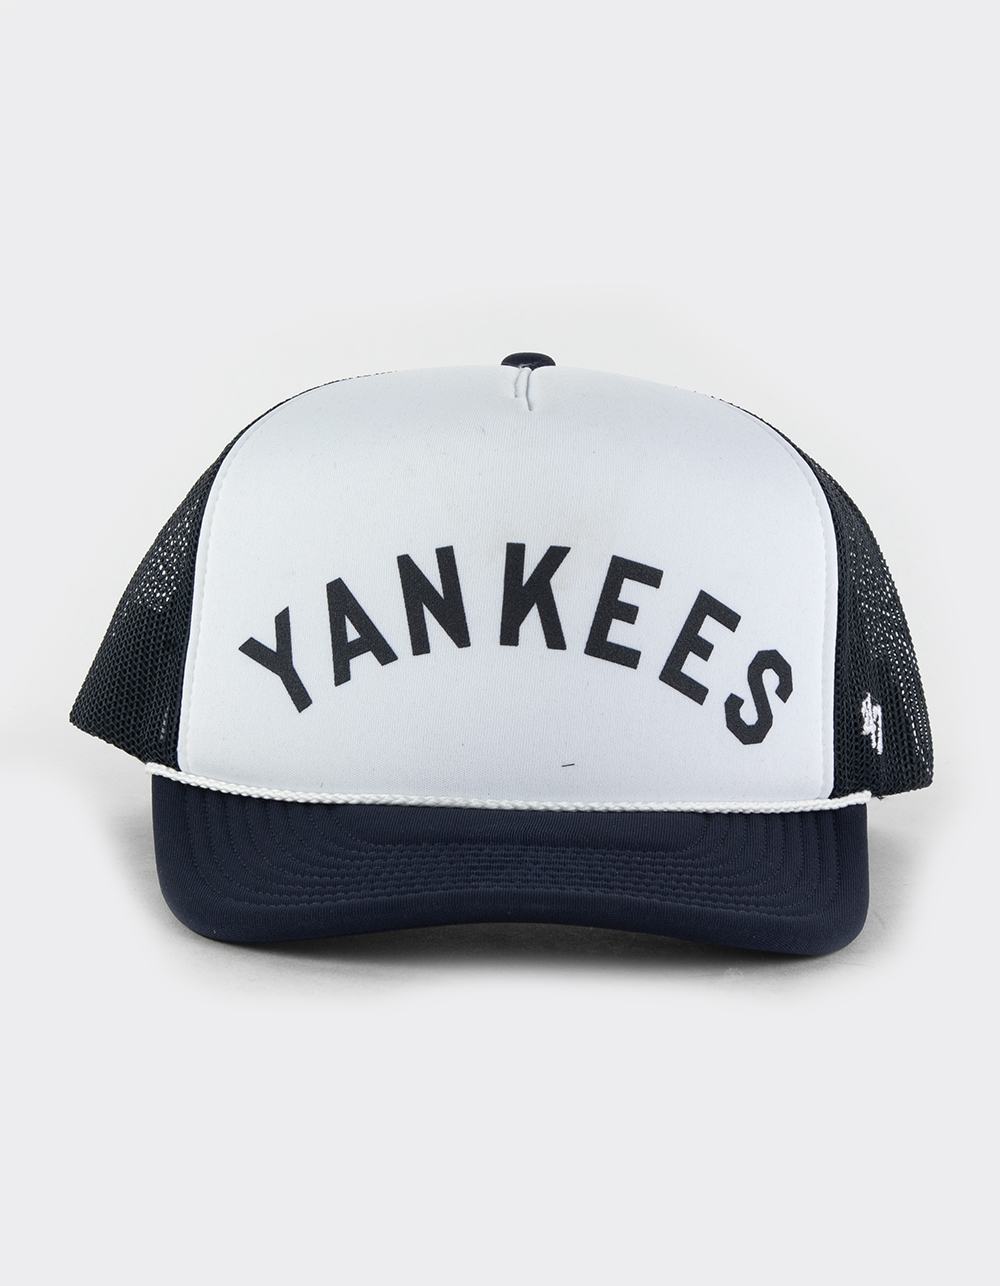 47 Brand New York Yankees Cooperstown Rewind Script '47 Trucker Hat - Navy/White - One Size